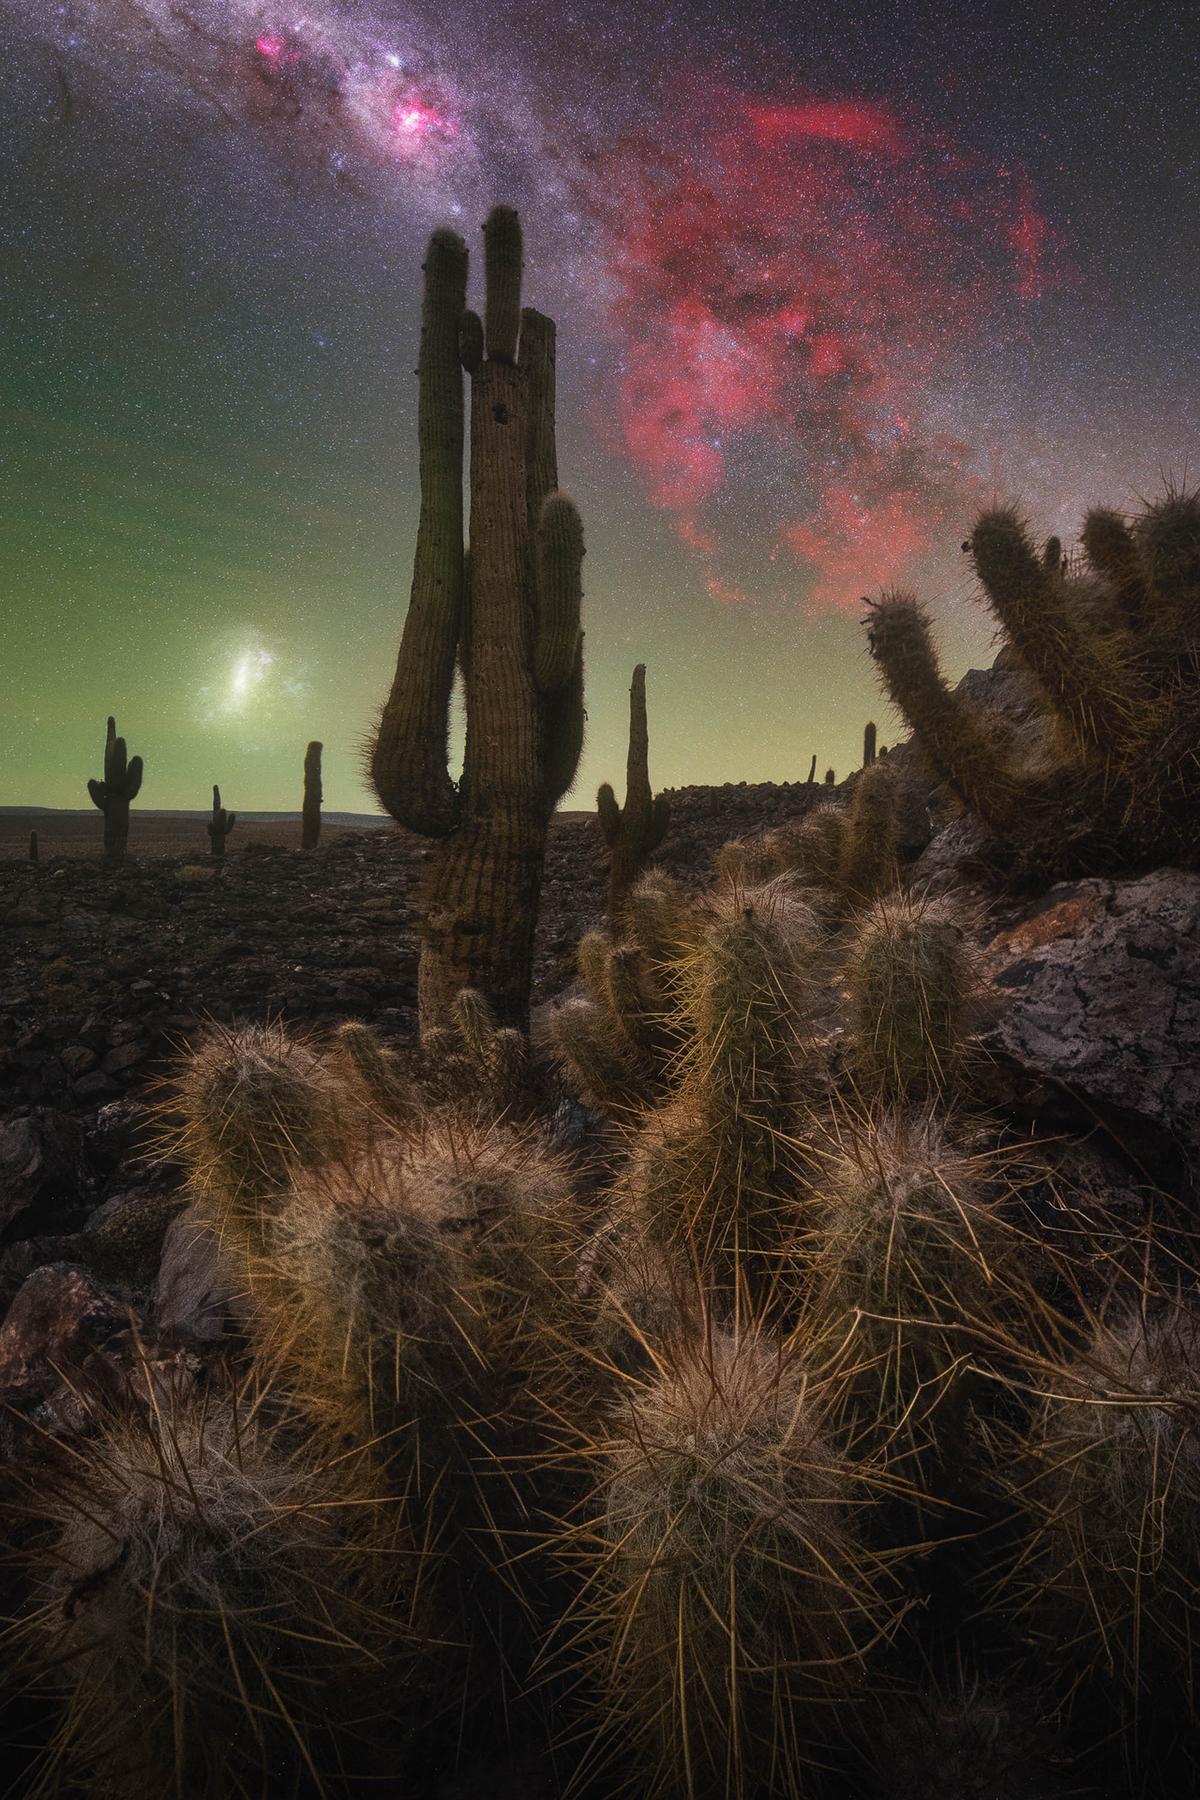 “The Cactus Valley” by Pablo Ruiz García. (Courtesy of Pablo Ruiz García)